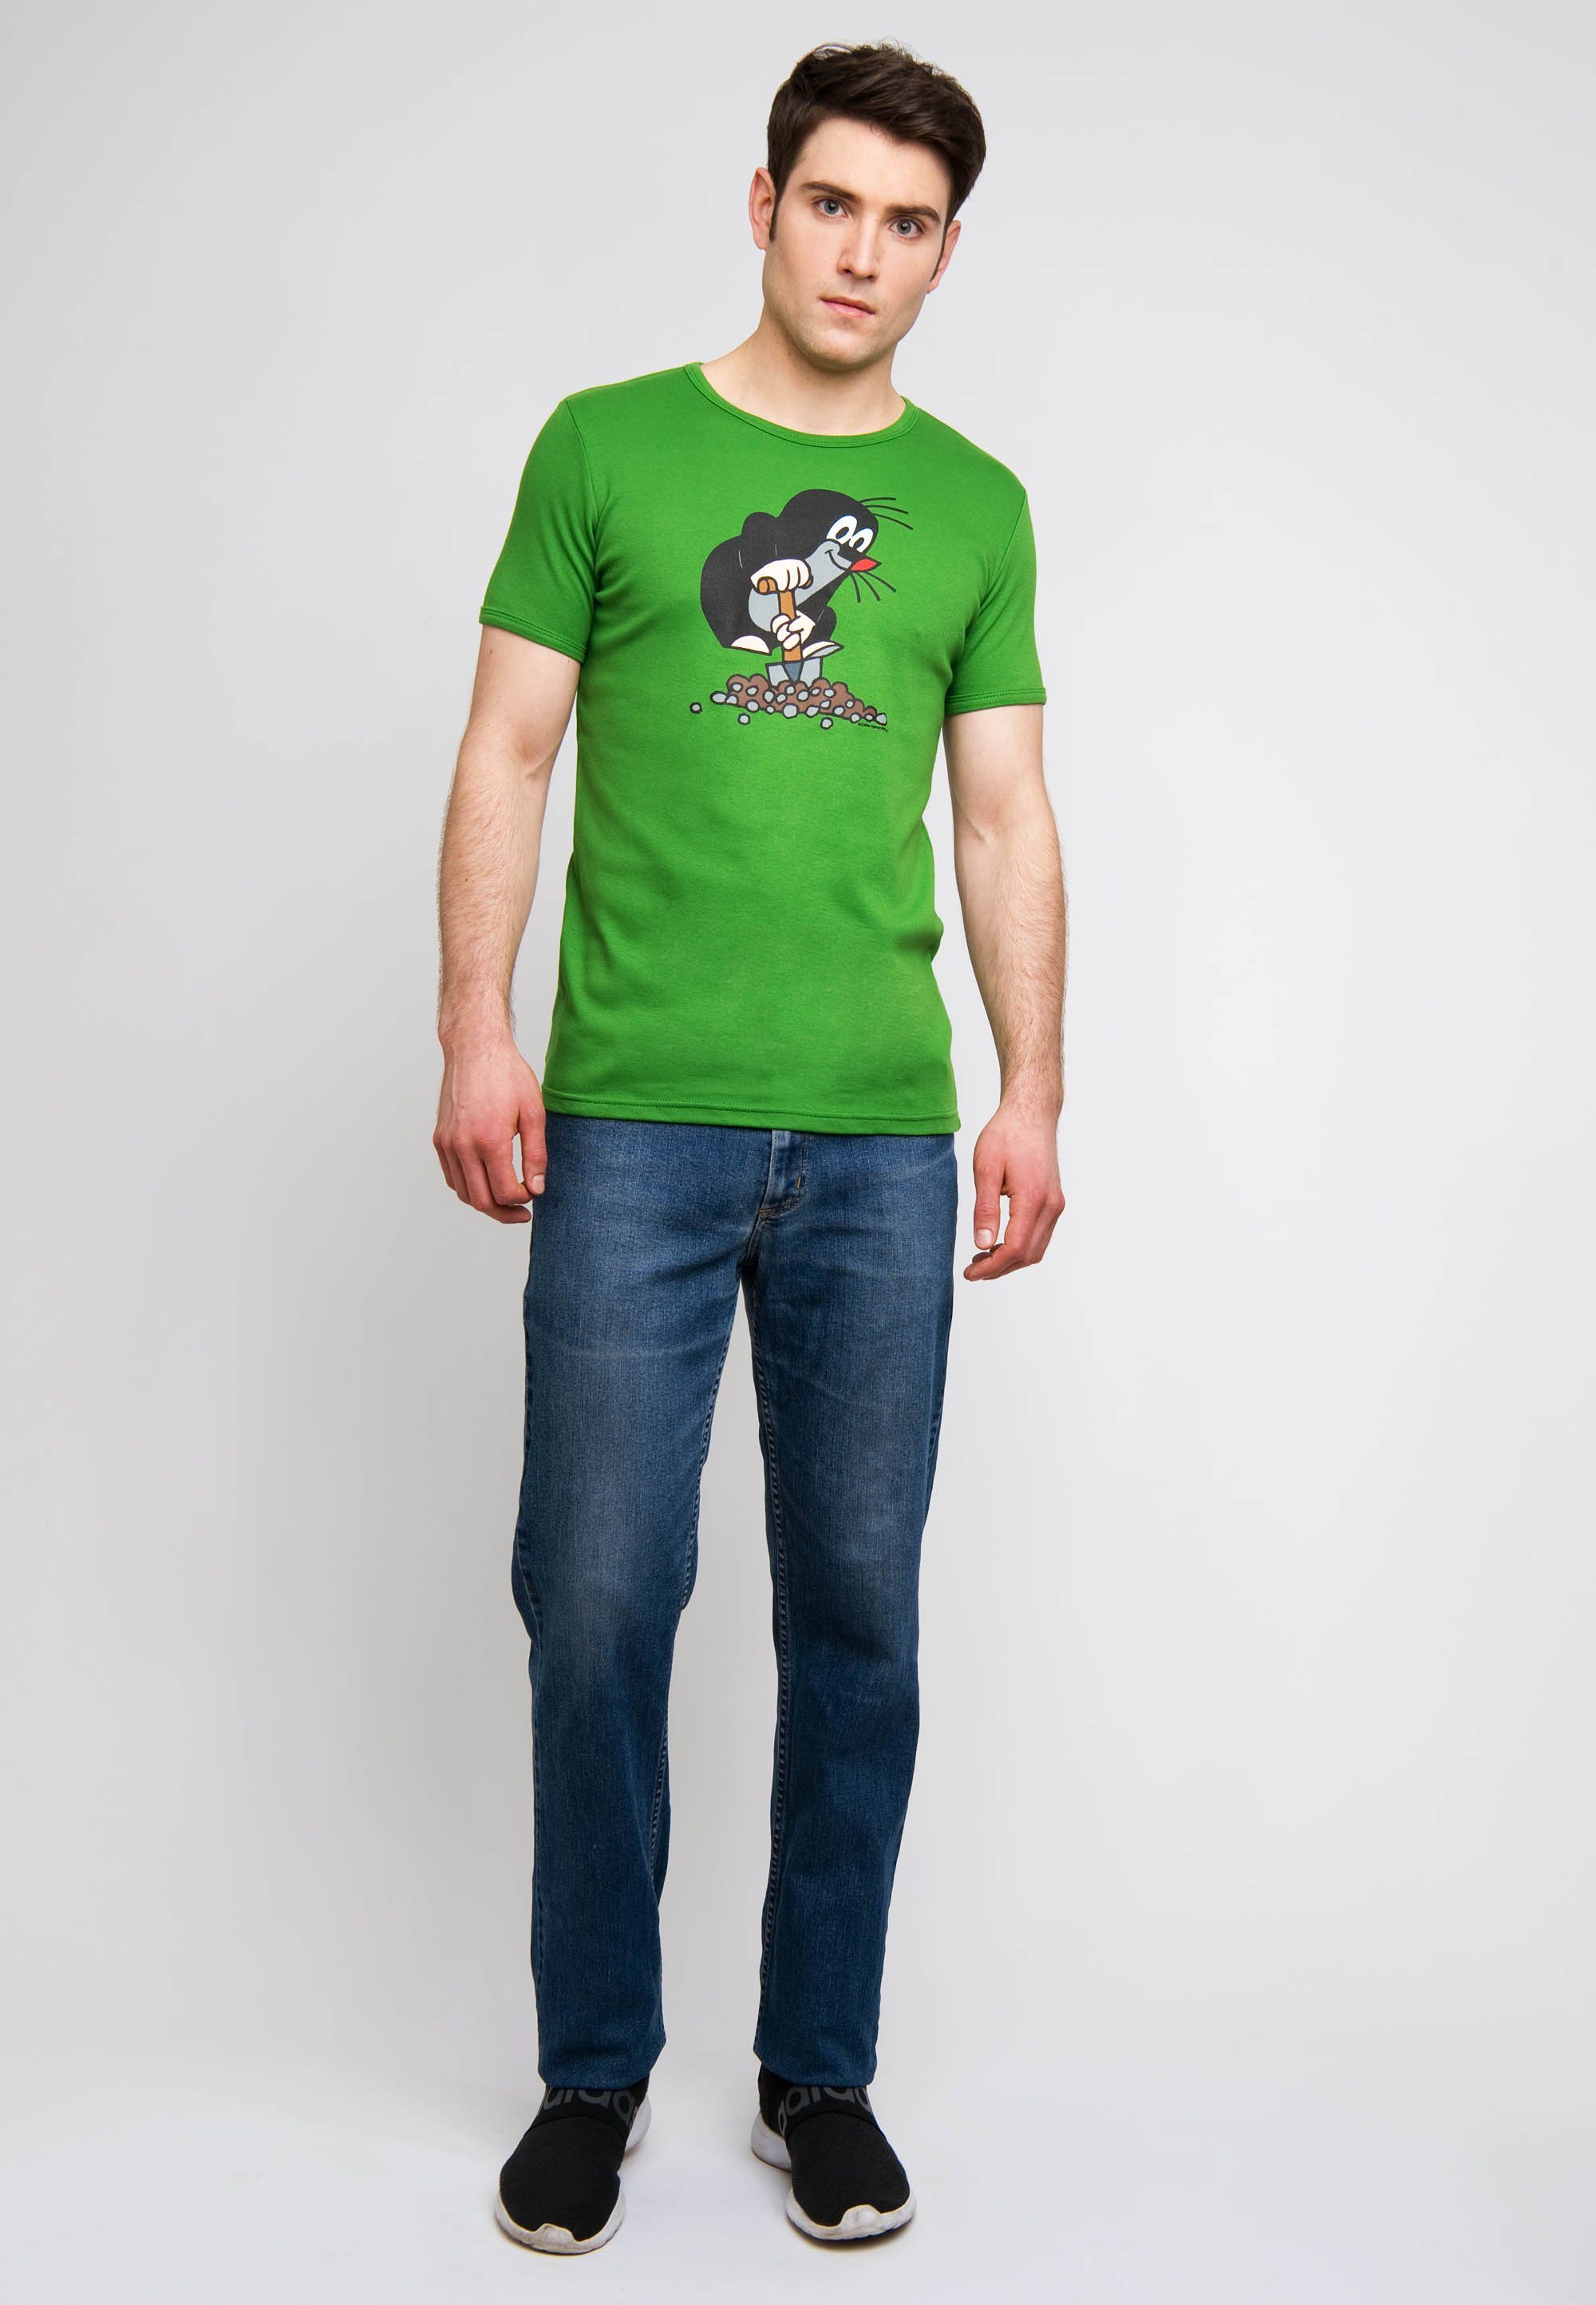 LOGOSHIRT T-Shirt Der kleine Maulwurf mit Der kleine Maulwurf-Print, Sehr  angenehm dank klassischem Rundhals-Ausschnitt